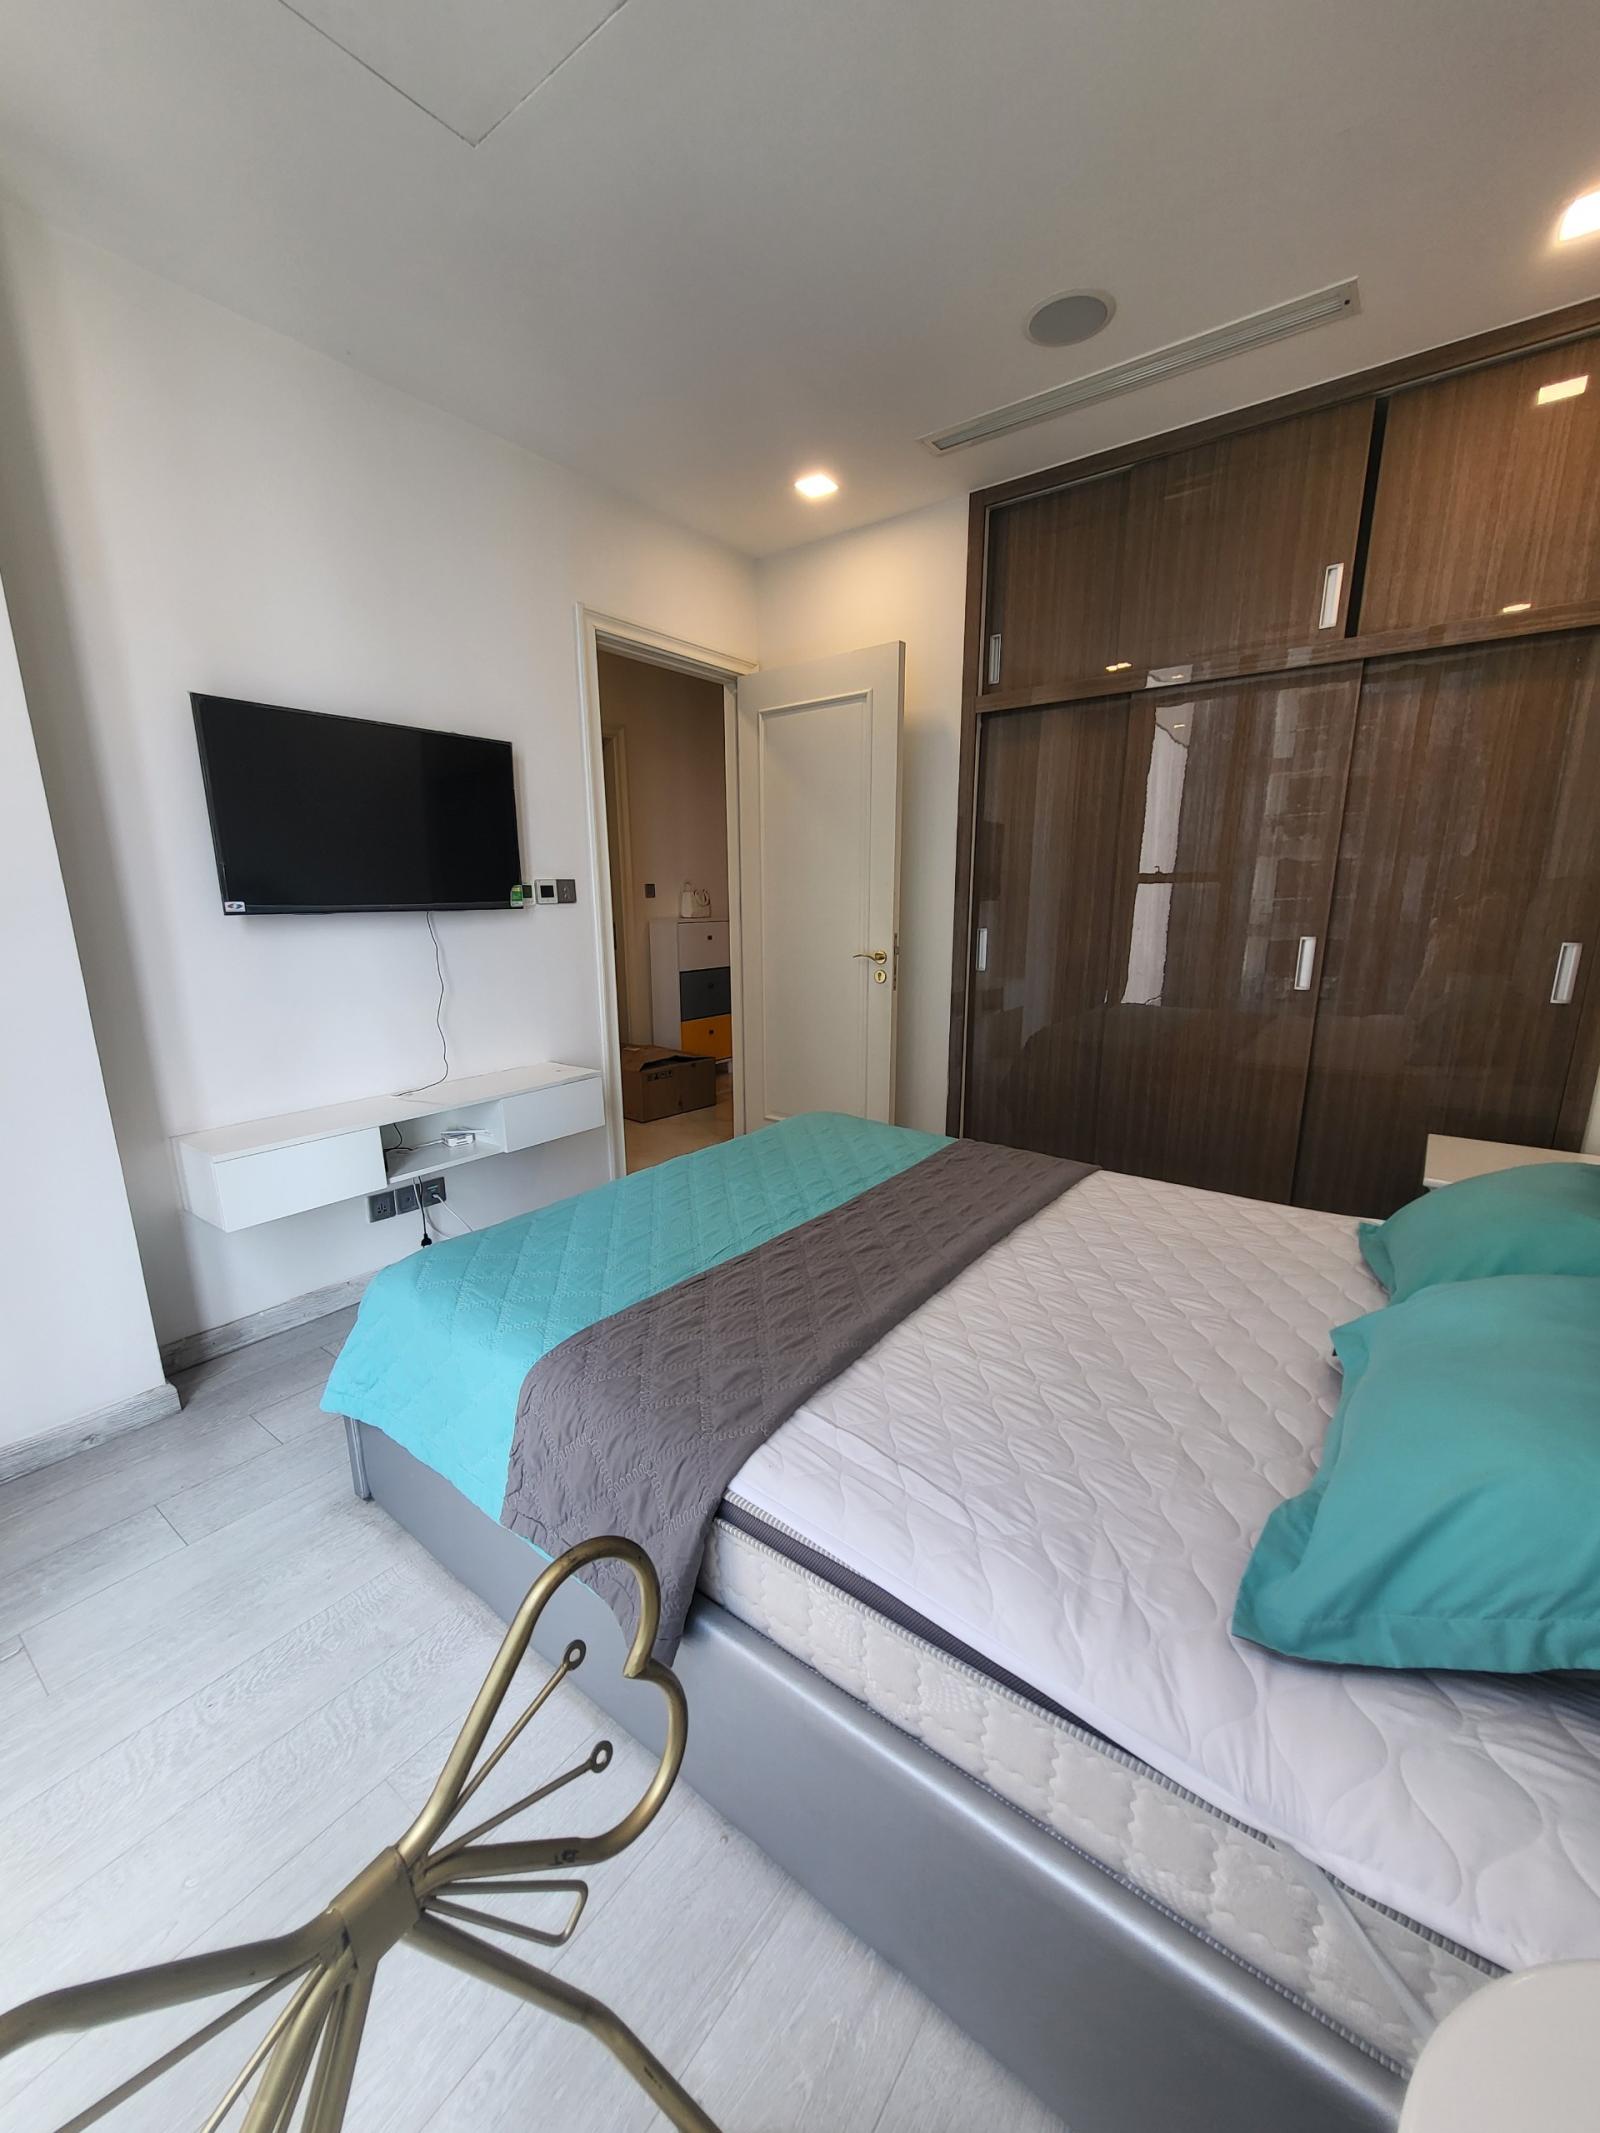 Vinhomes Golden River - Cho thuê căn hộ thông minh, tối ưu không gian, giúp tiết kiệm chi phí